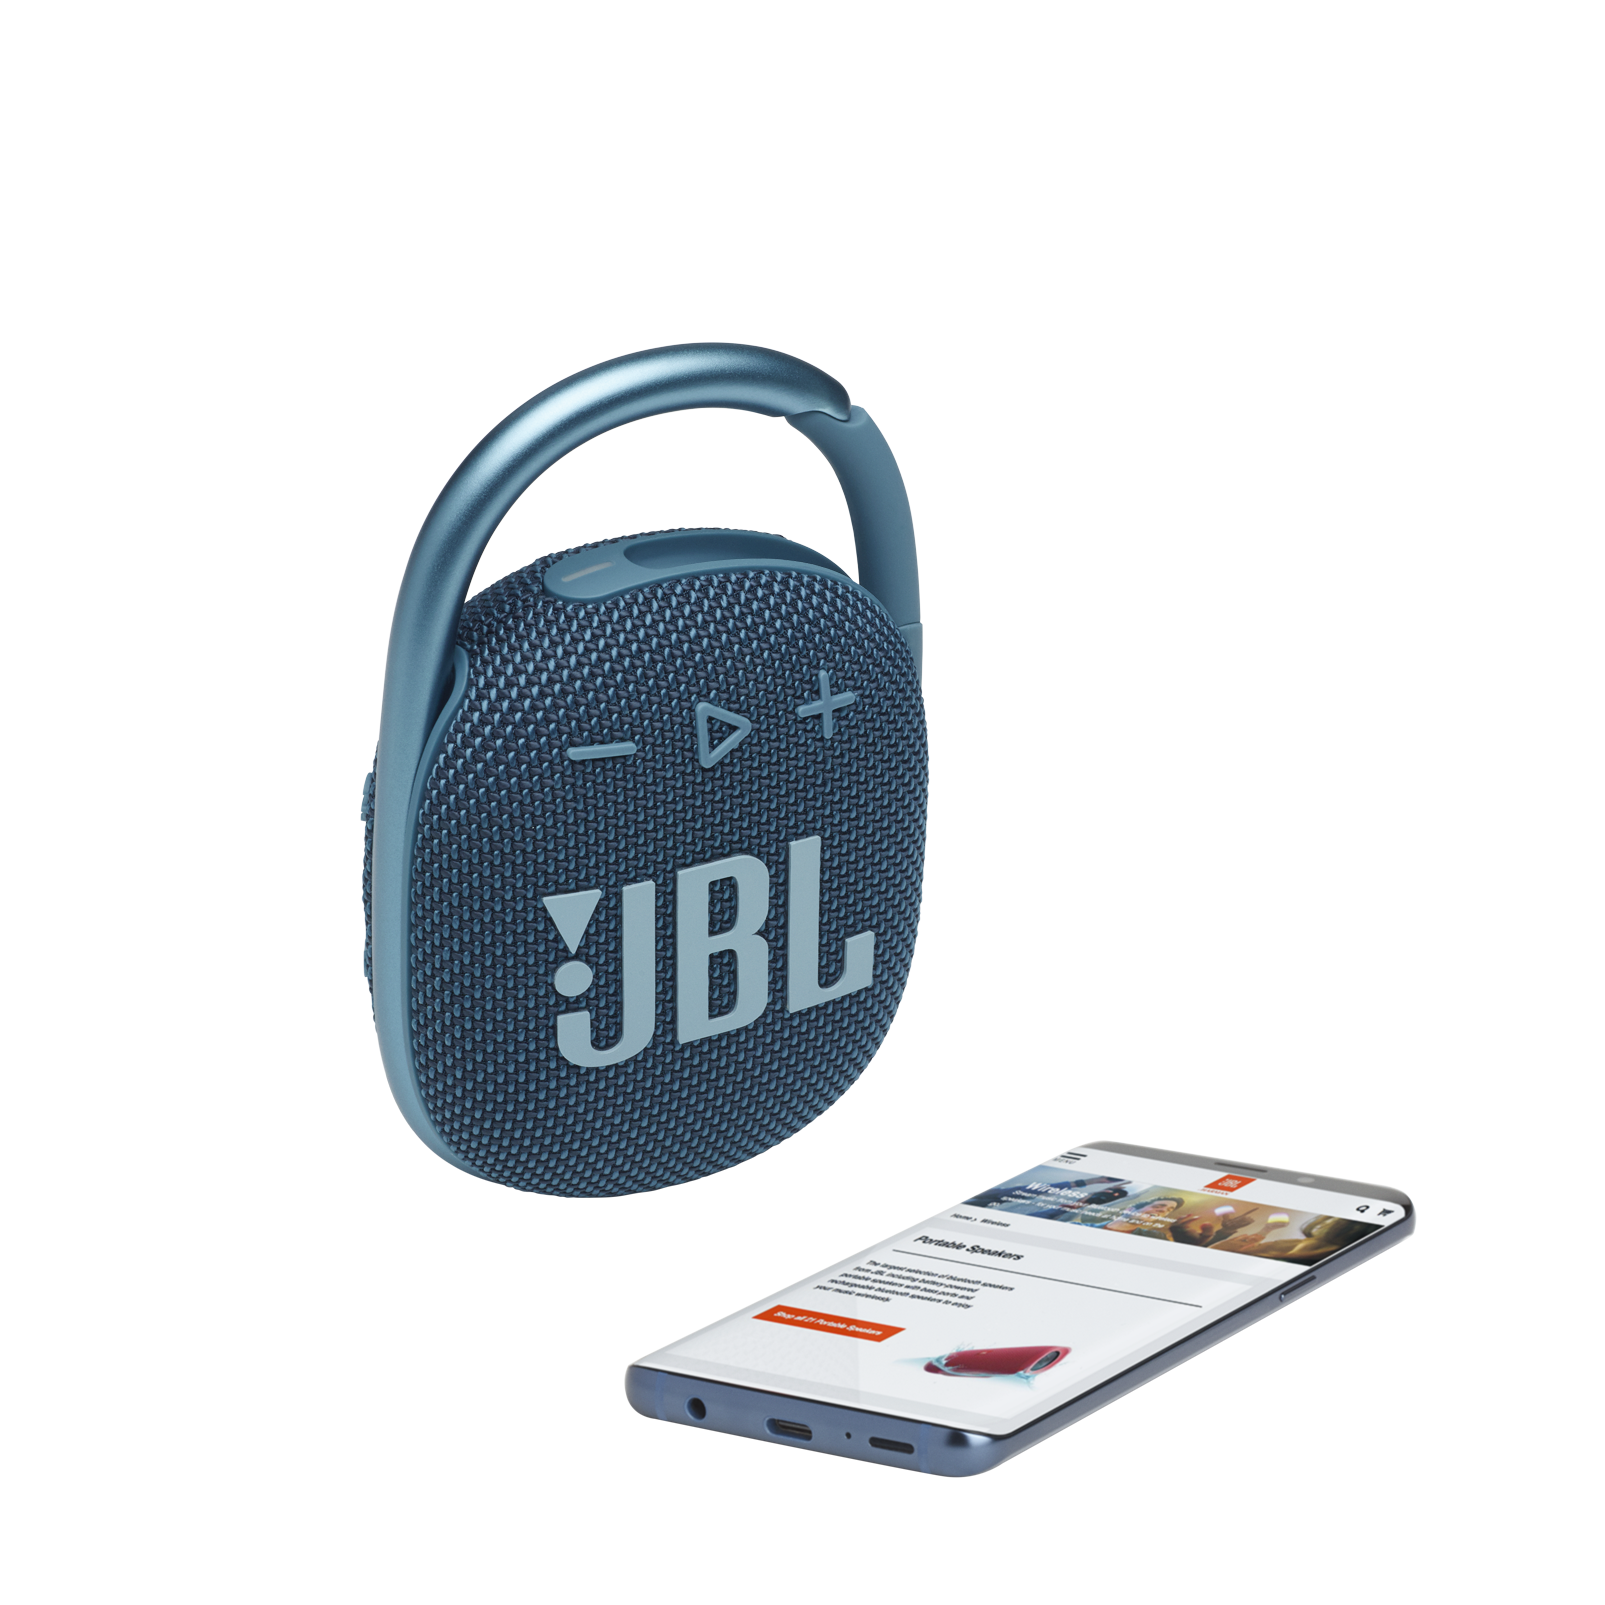 JBL Clip 4 - Blue - Ultra-portable Waterproof Speaker - Detailshot 1